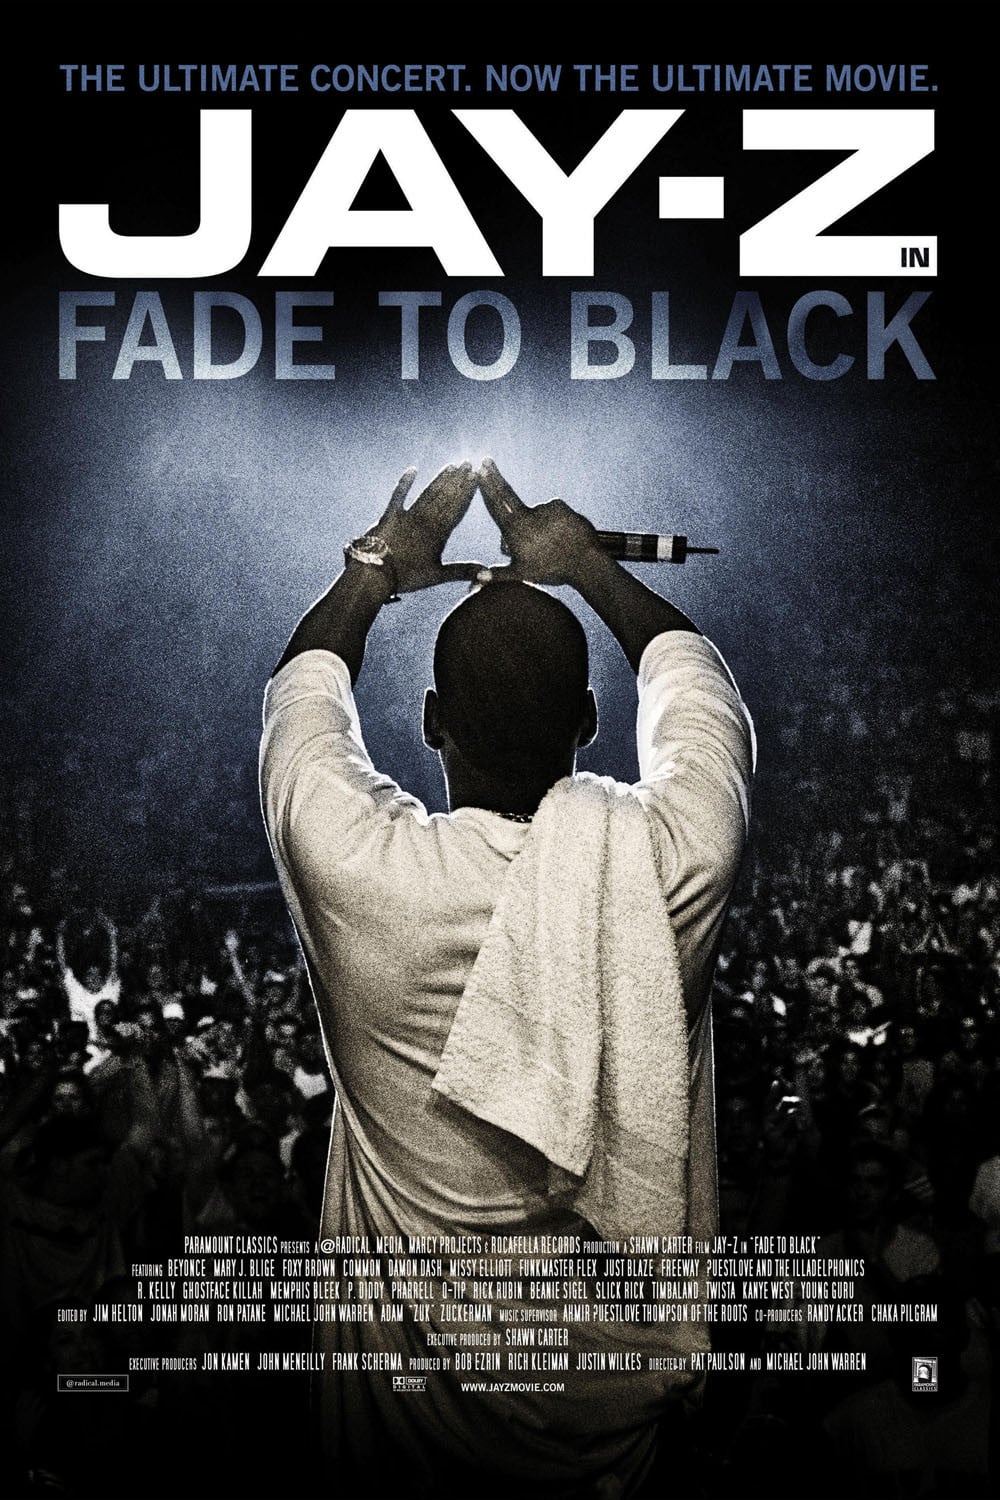 Plakat von "Fade to Black"